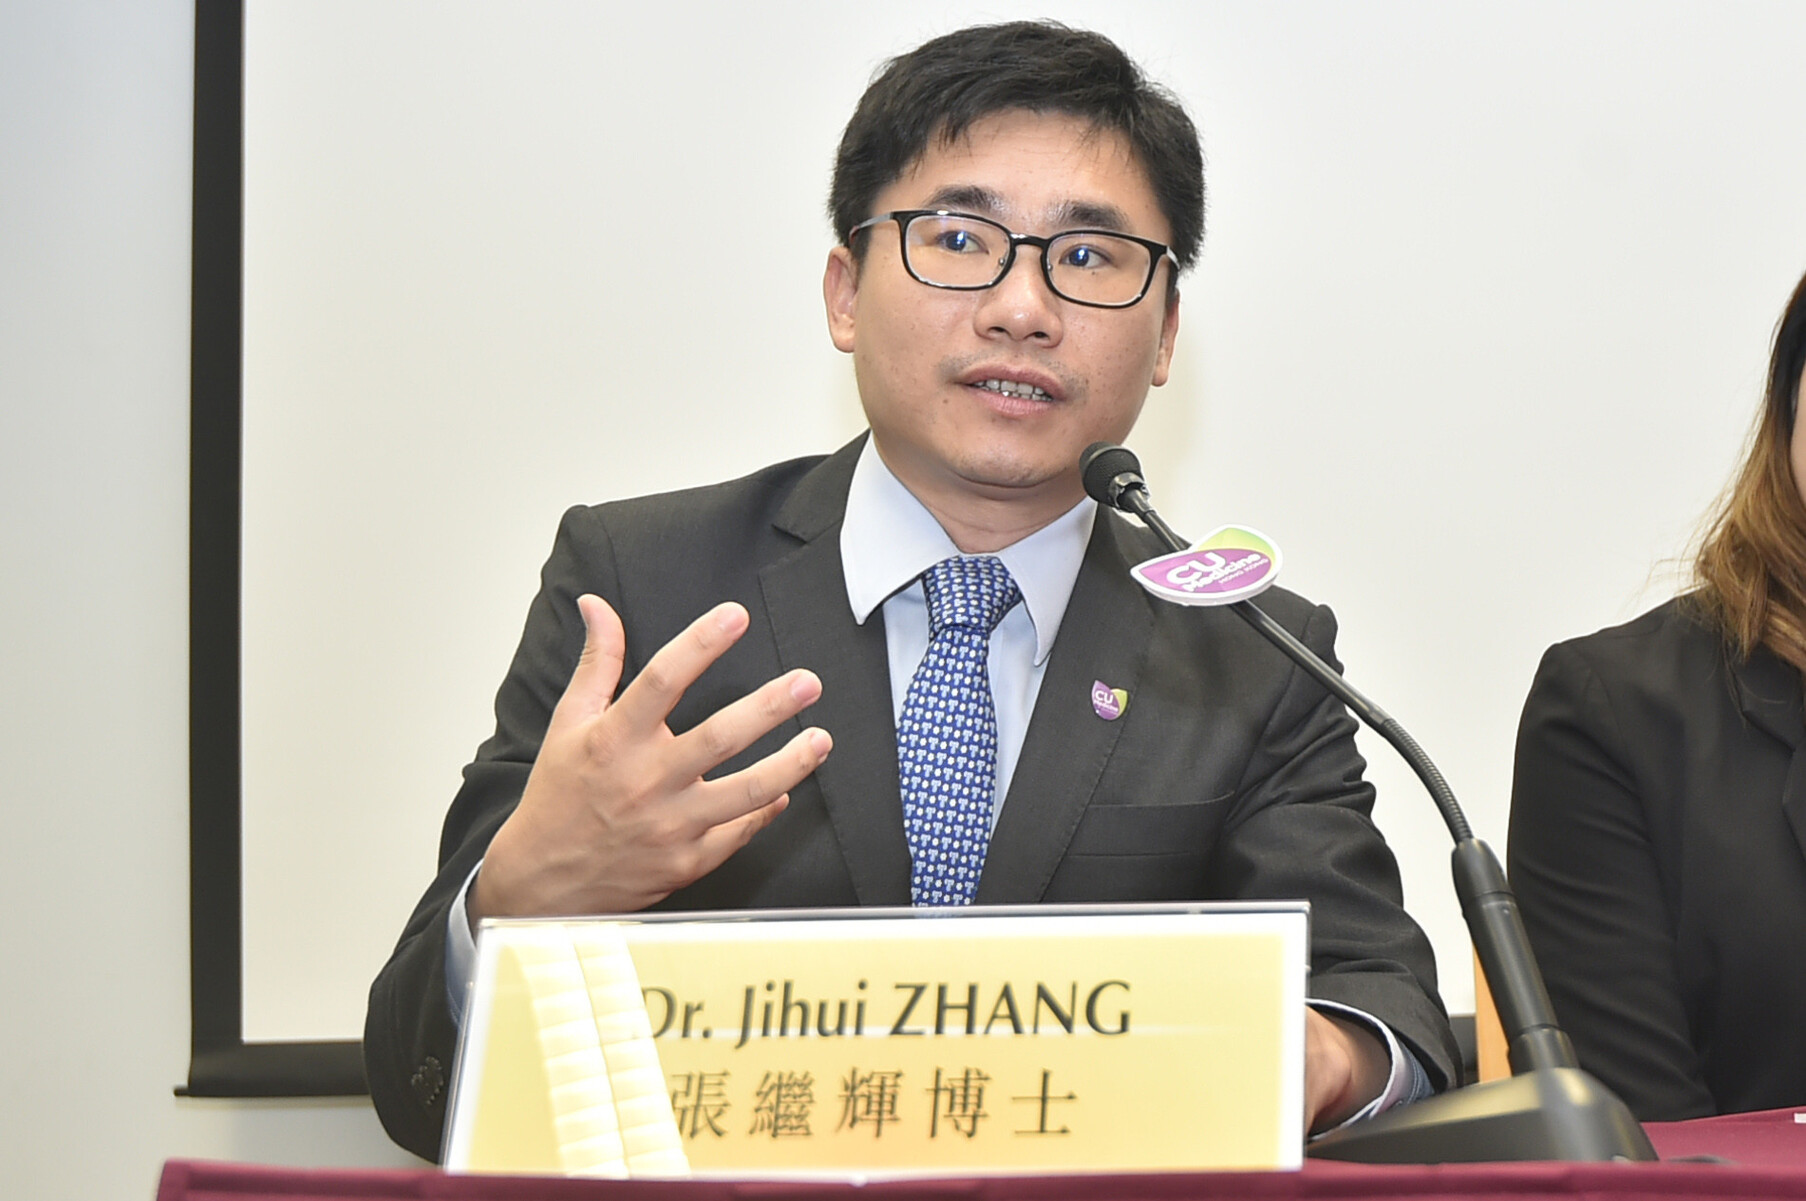 Dr Jihui Zhang